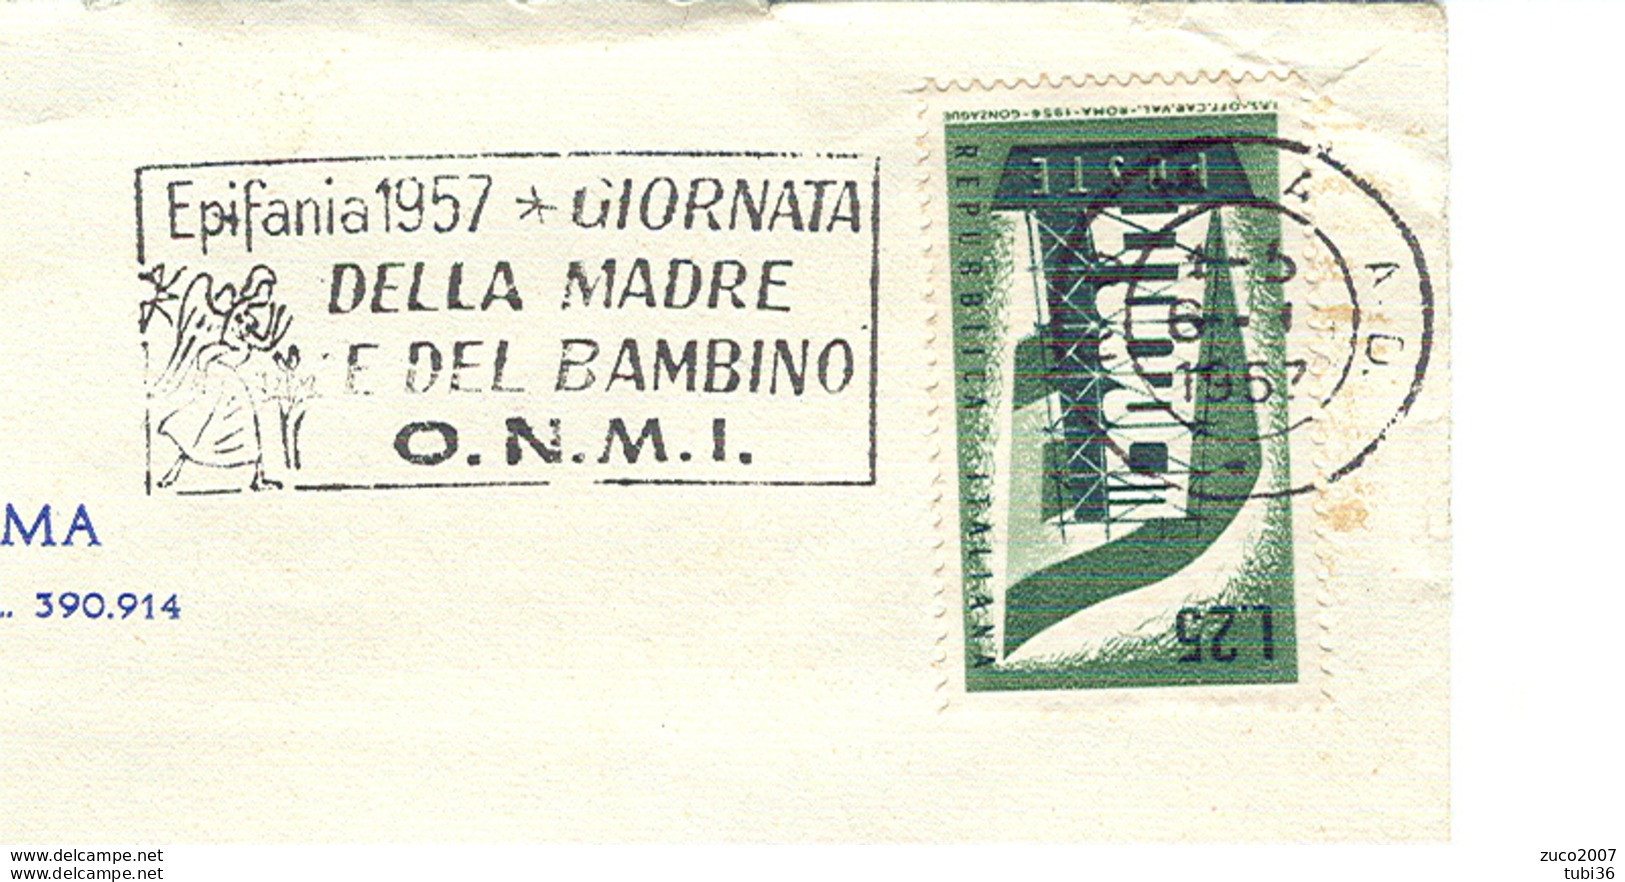 EPIFANIA 1957, GIORNATA DELLA MADRE E DEL BAMBINO- O.N.M.I.- TIMBRO POSTE ROMA TARGHETTA,1957,CIRCOLO CANOTTIERI,ROMA, - Muttertag